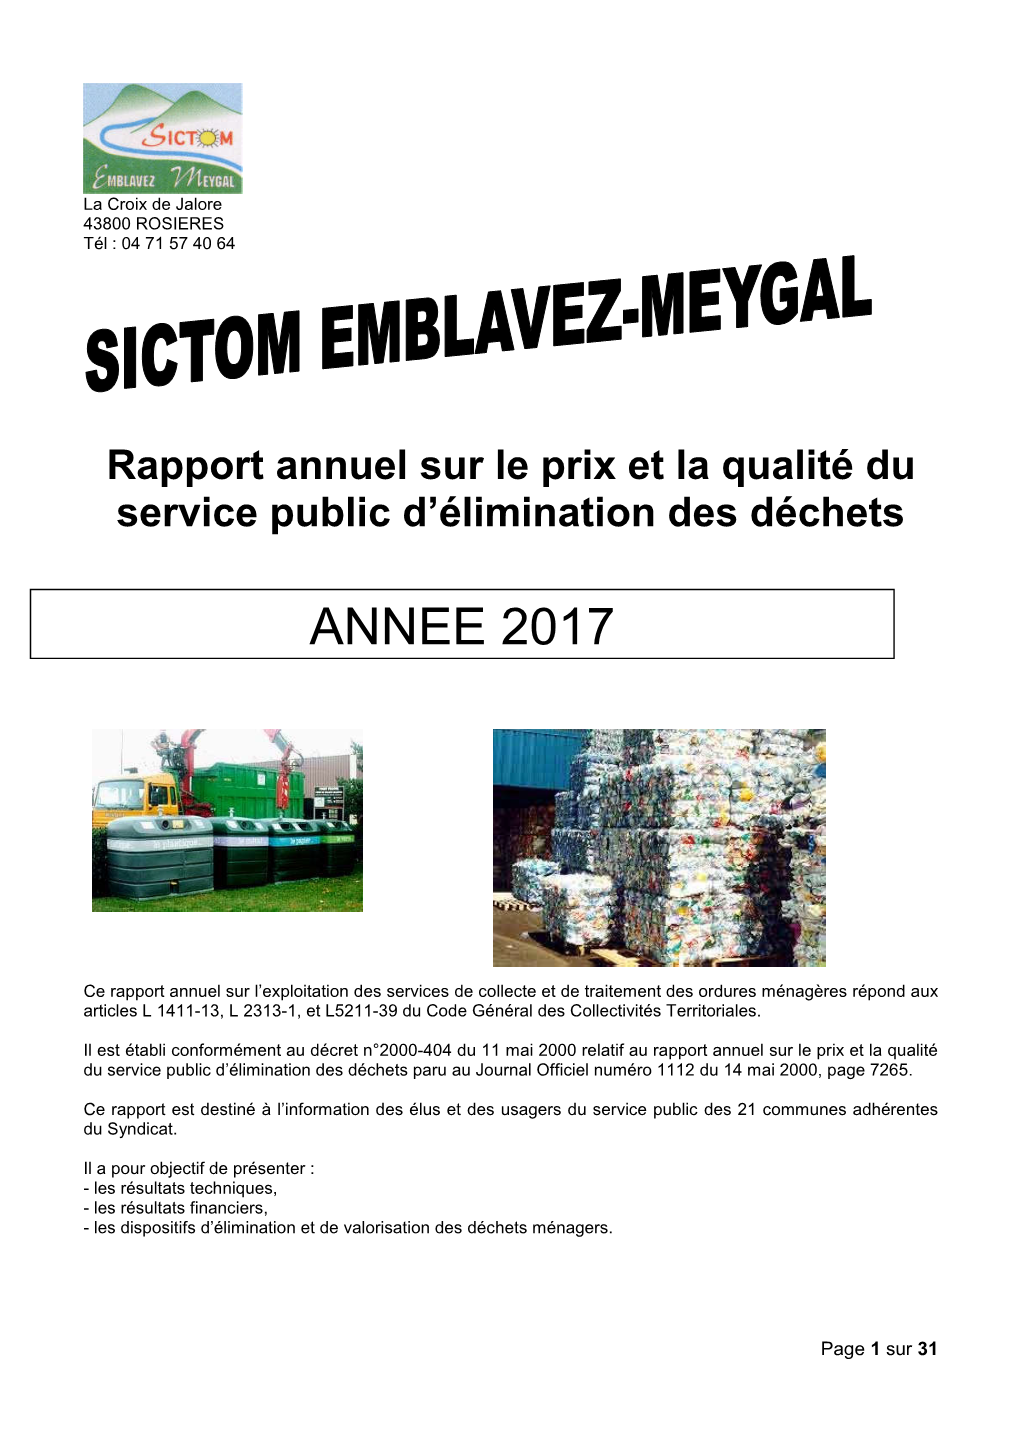 DD Sictom Emblavez Meygal Rapport Annuel 2017